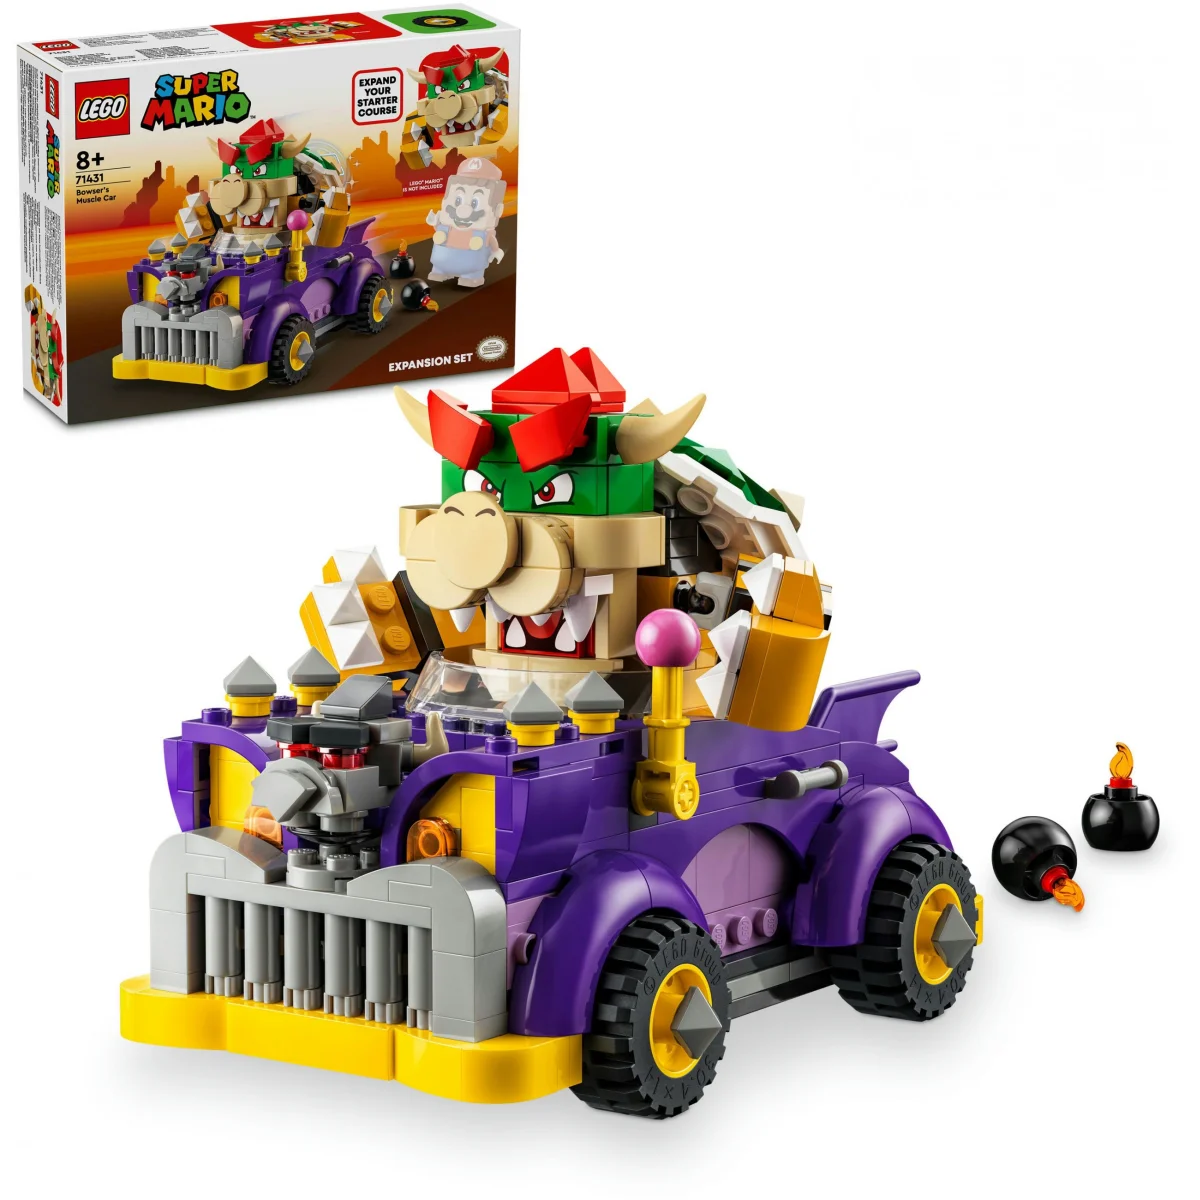 LEGO® Super Mario Bowsers Monsterkarre - Erweiterungsset 71431